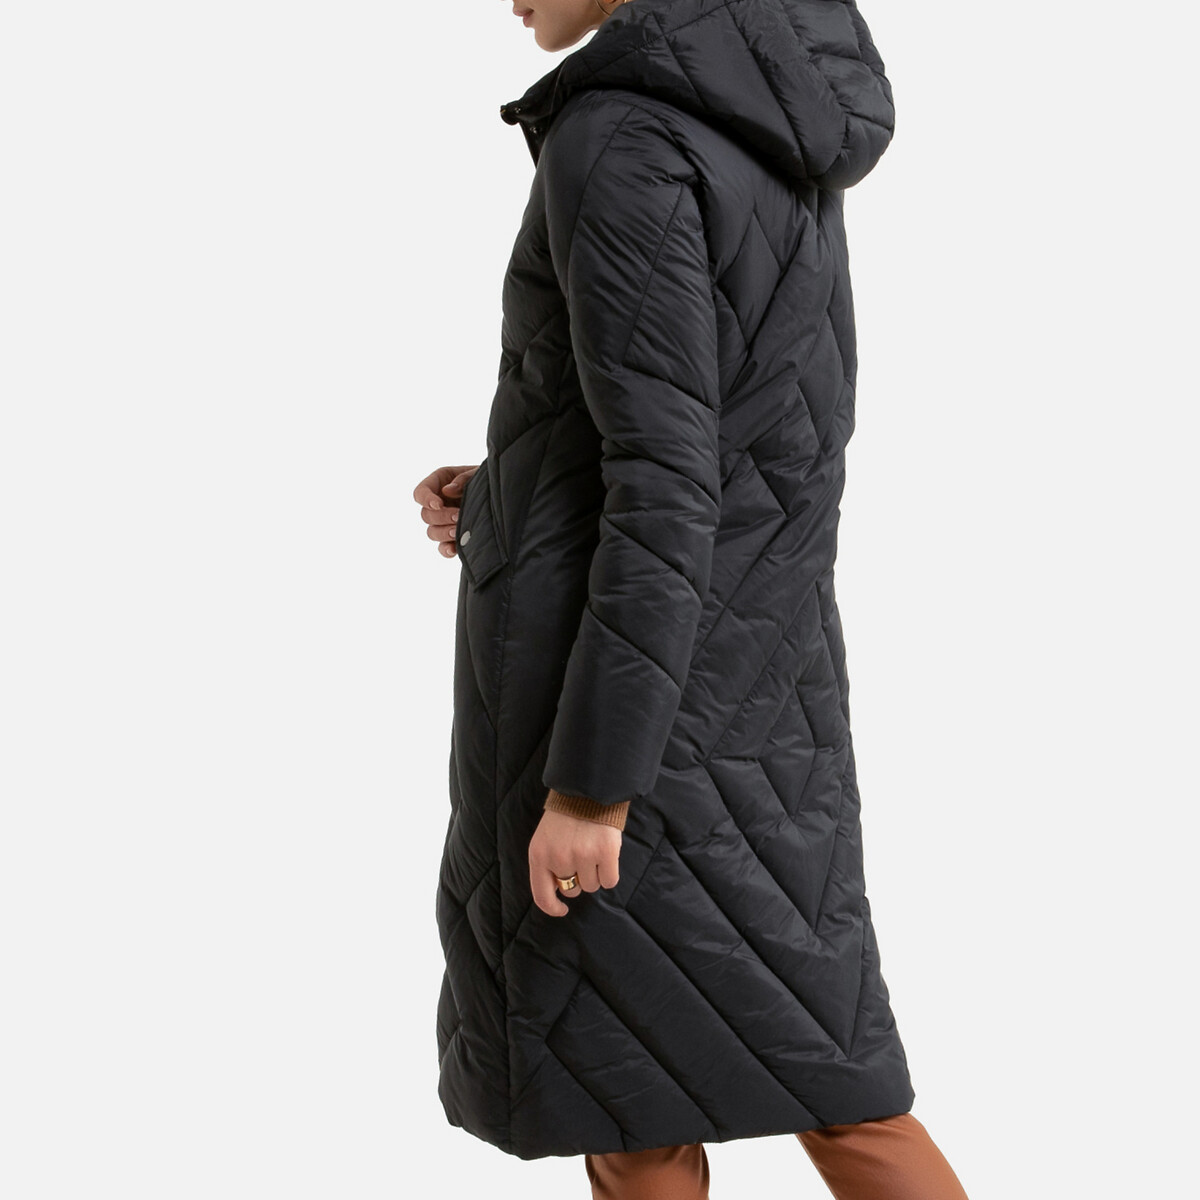 Куртка LaRedoute Стеганая длинная с капюшоном зимняя модель 54 (FR) - 60 (RUS) черный, размер 54 (FR) - 60 (RUS) Стеганая длинная с капюшоном зимняя модель 54 (FR) - 60 (RUS) черный - фото 4